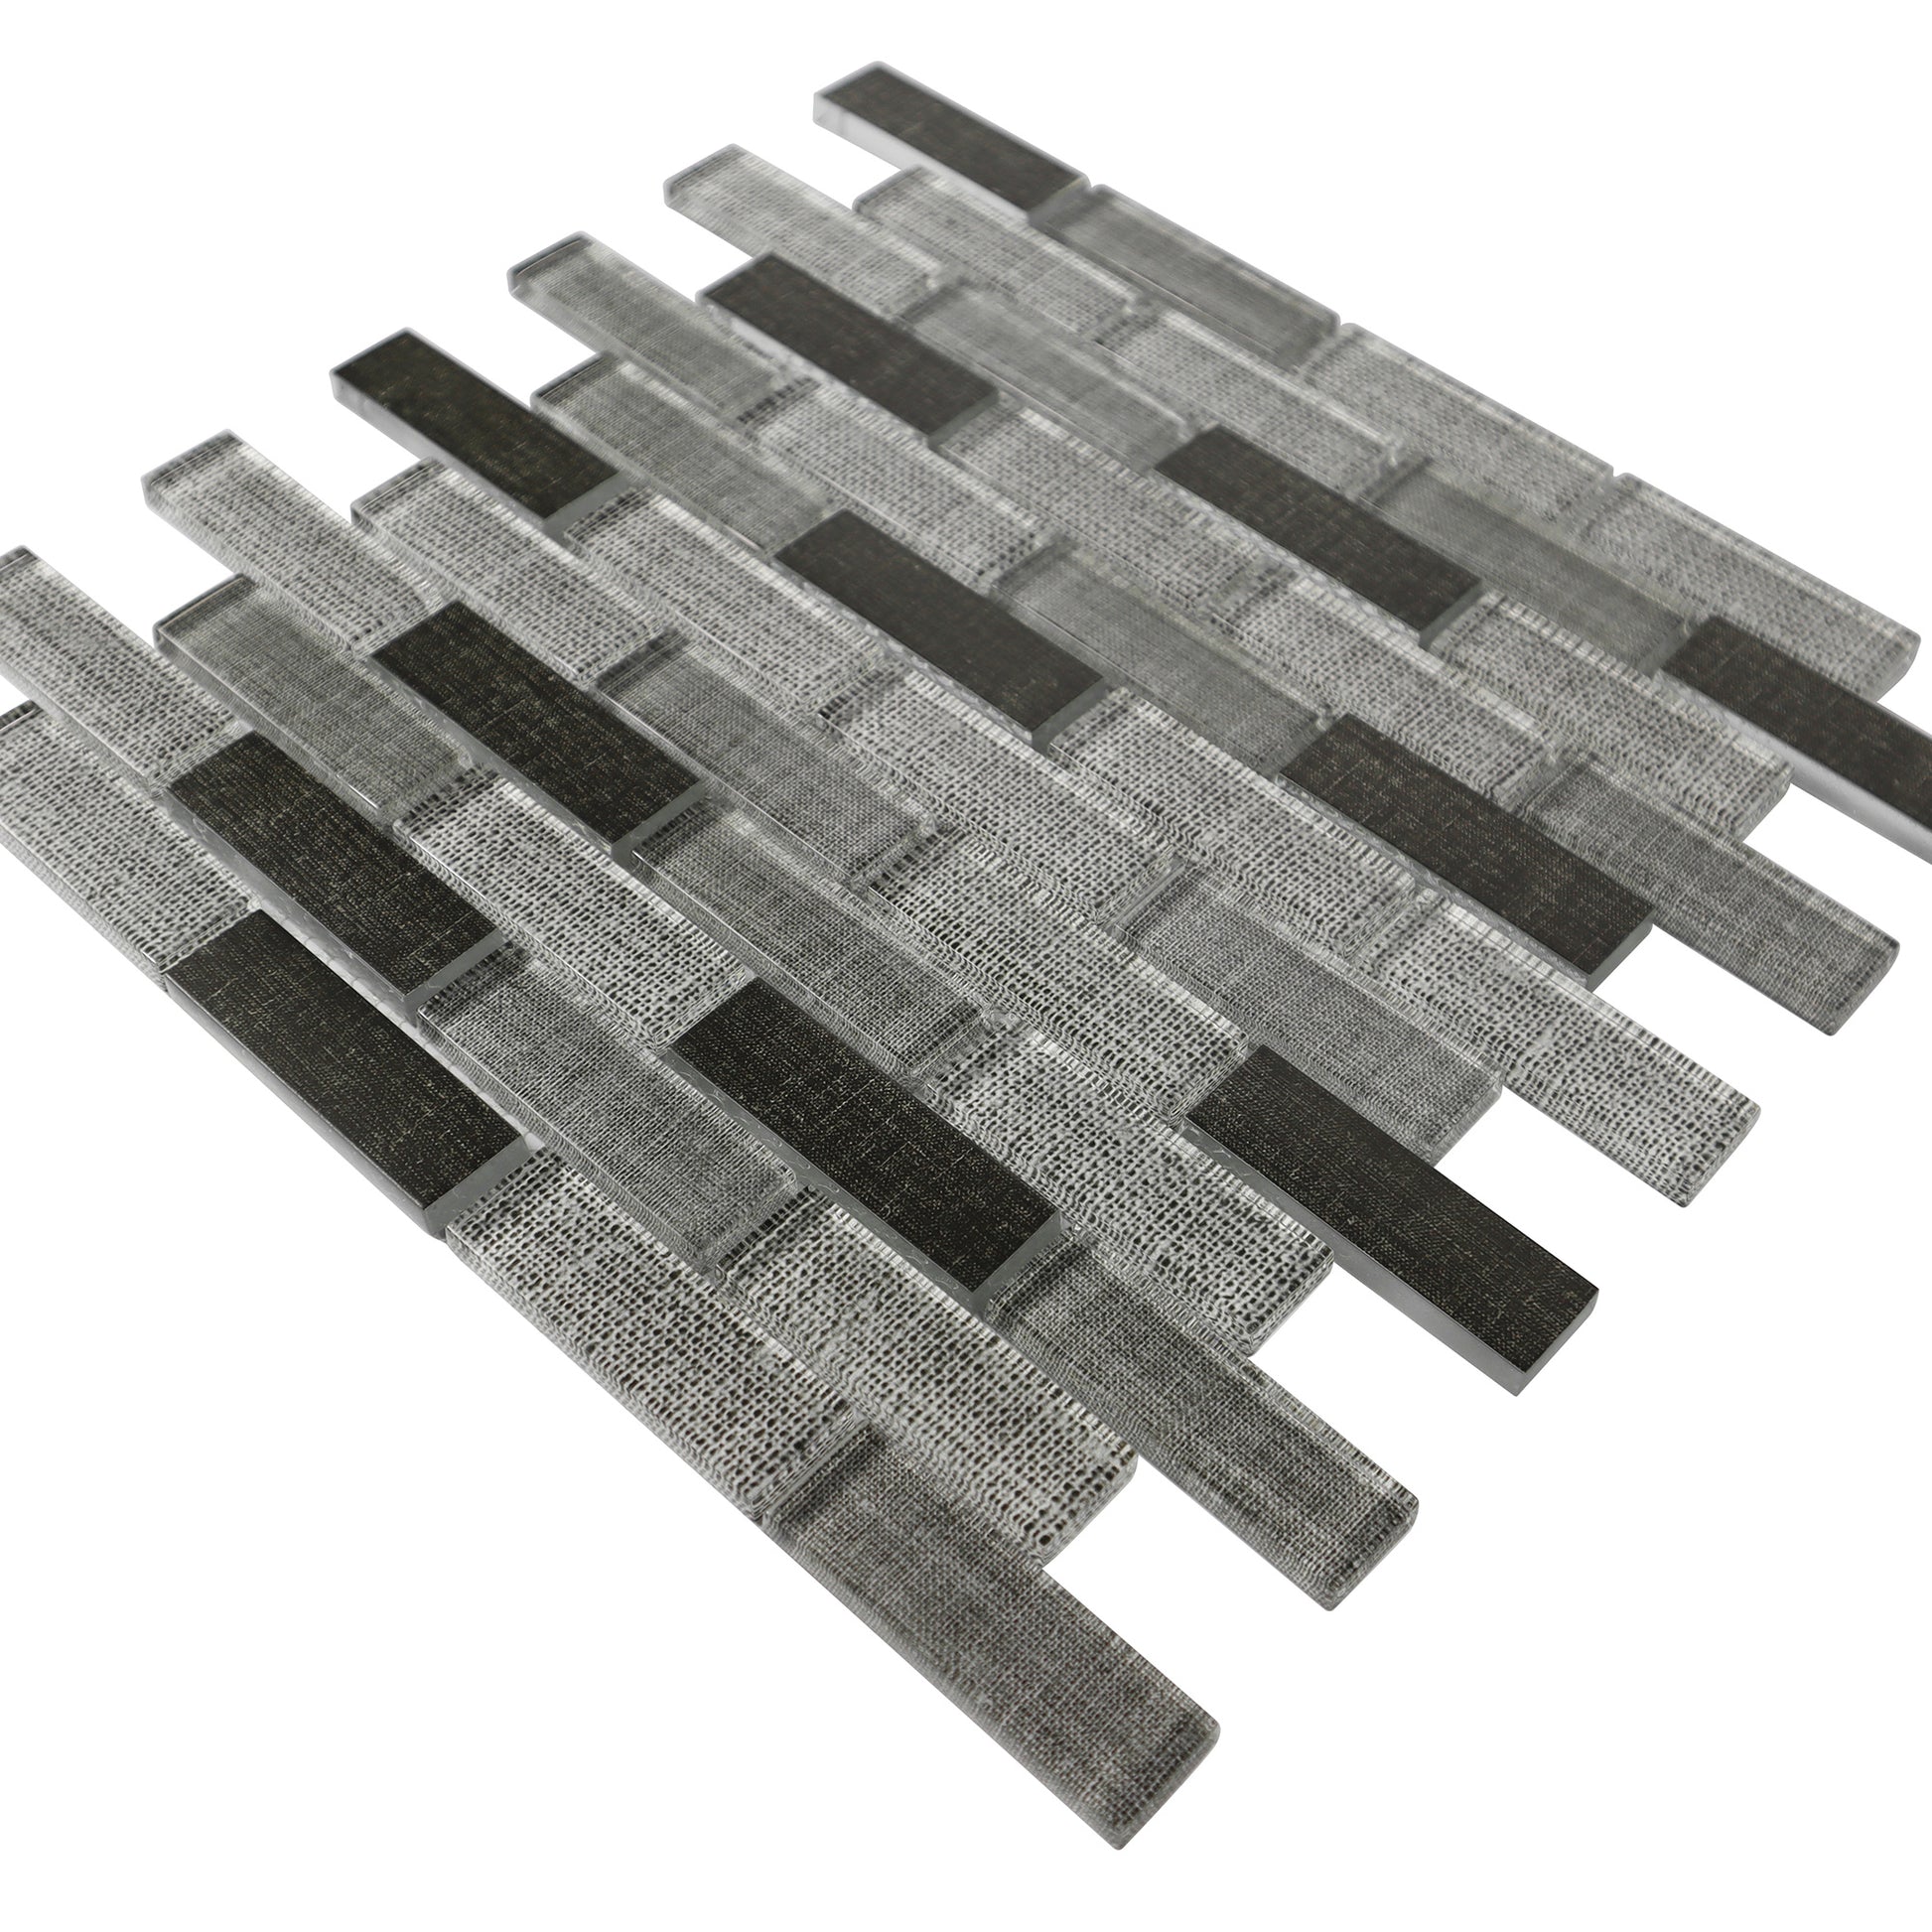 12‘’x12‘’ dark gray glass tile for bathroom